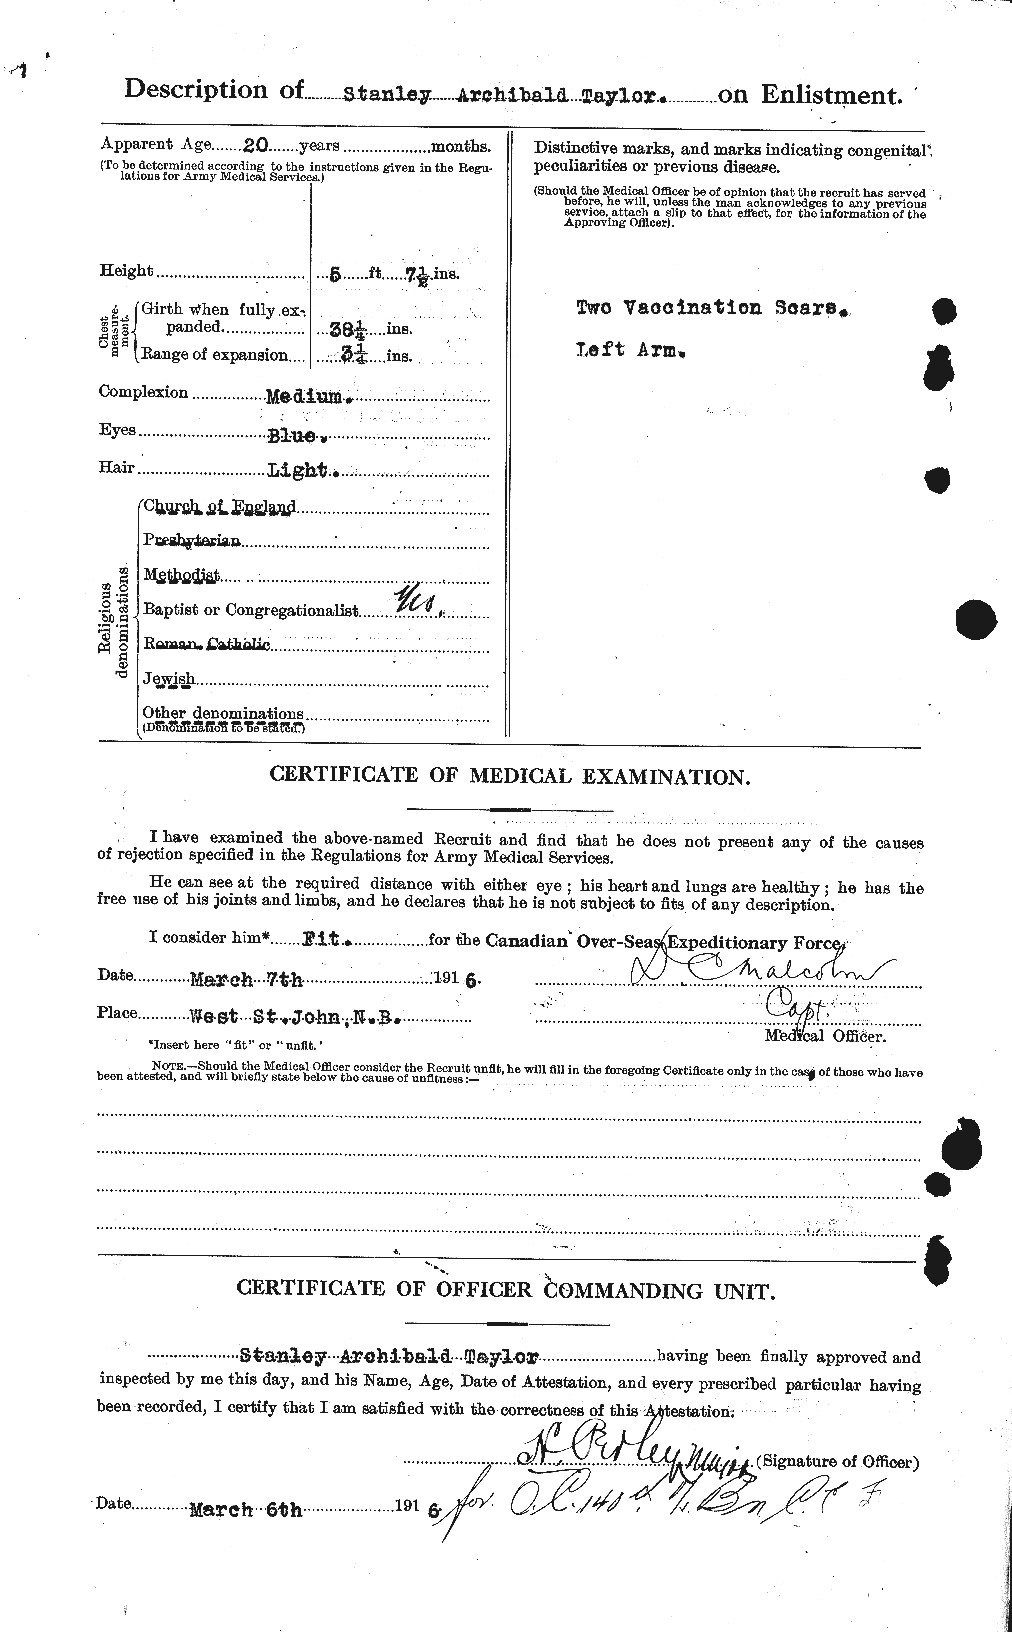 Dossiers du Personnel de la Première Guerre mondiale - CEC 627915b